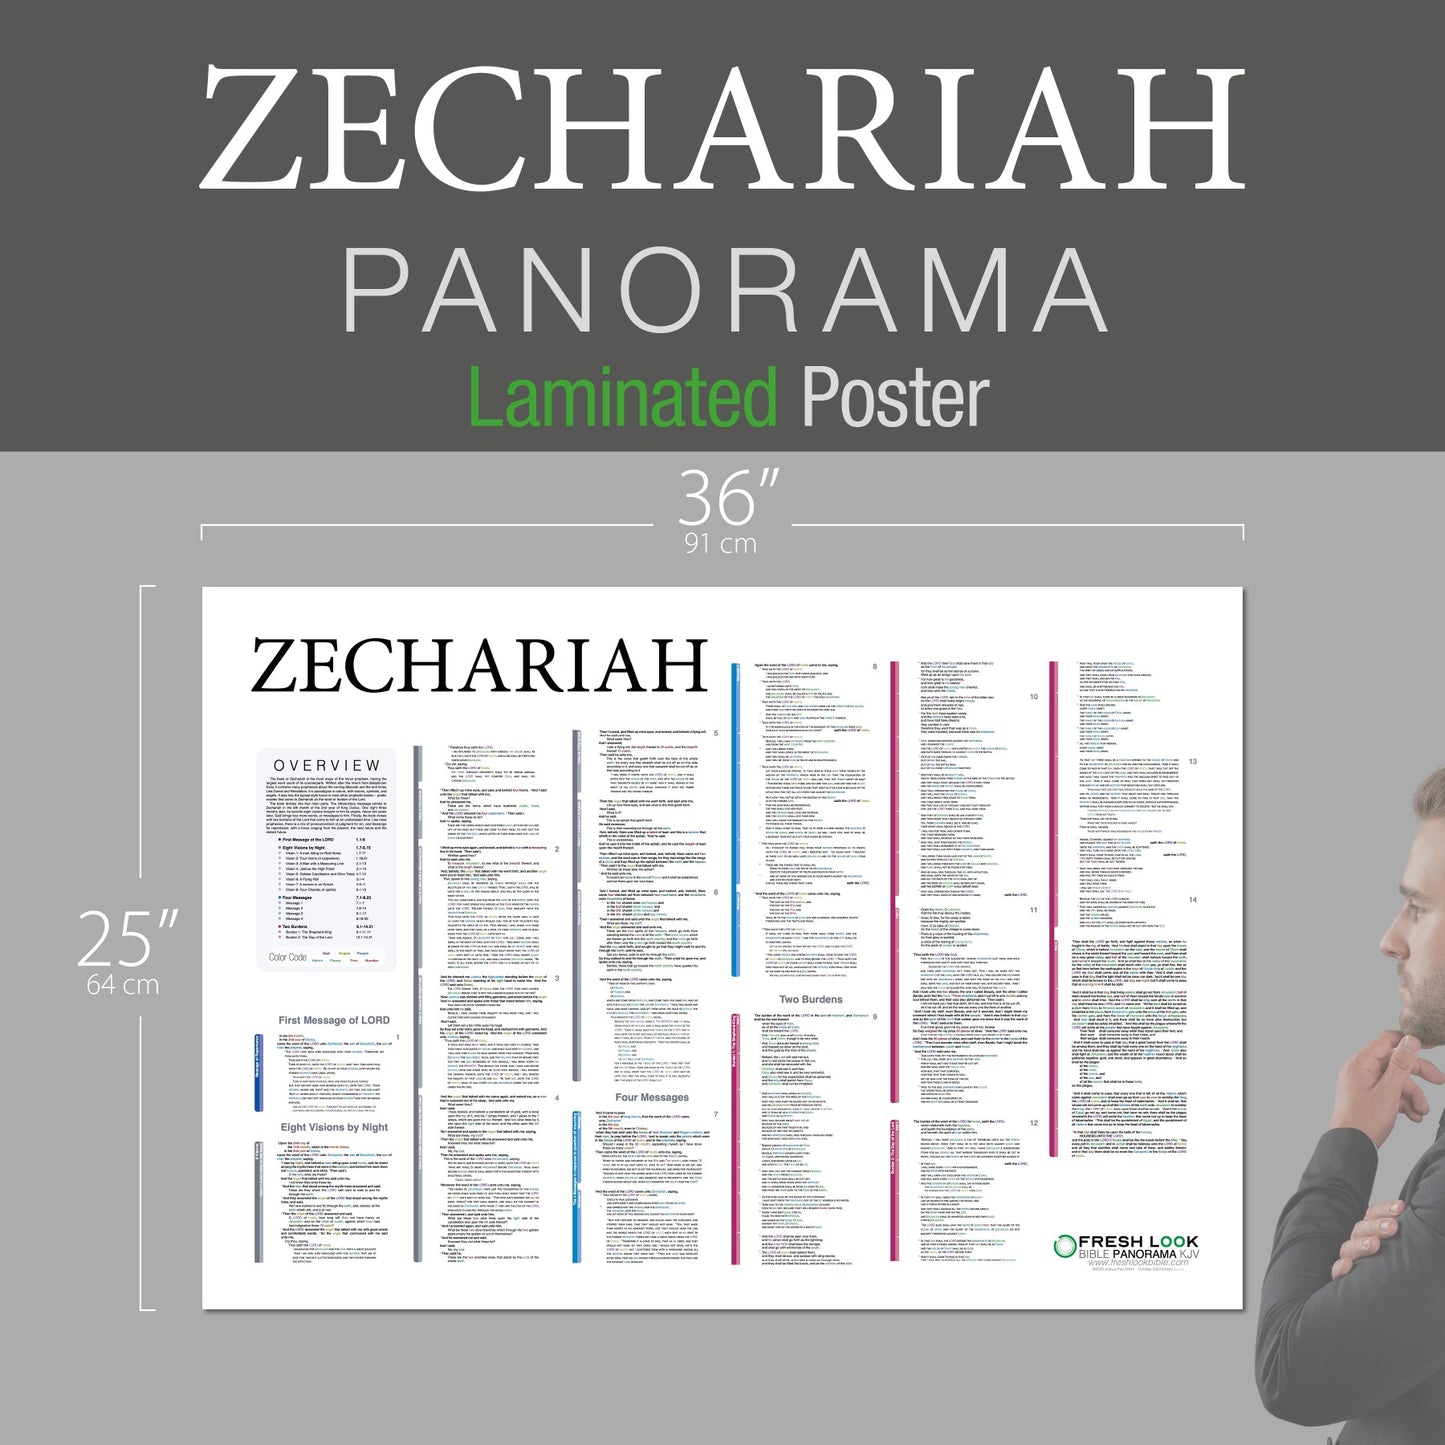 Zechariah Panorama Laminated